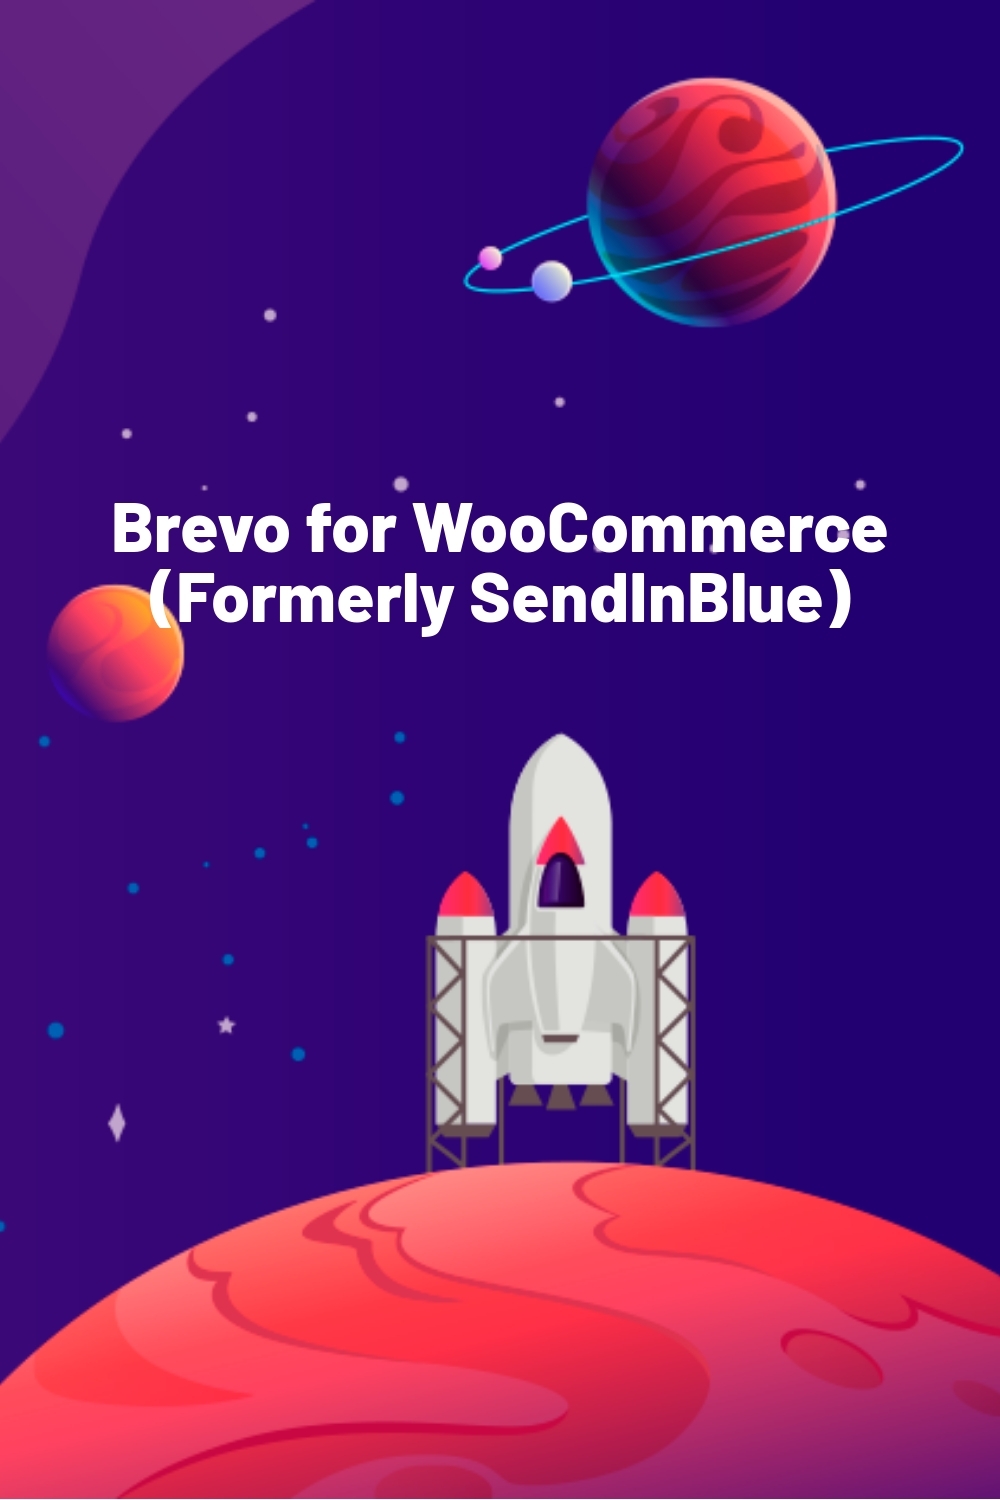 Brevo for WooCommerce (Formerly SendInBlue)